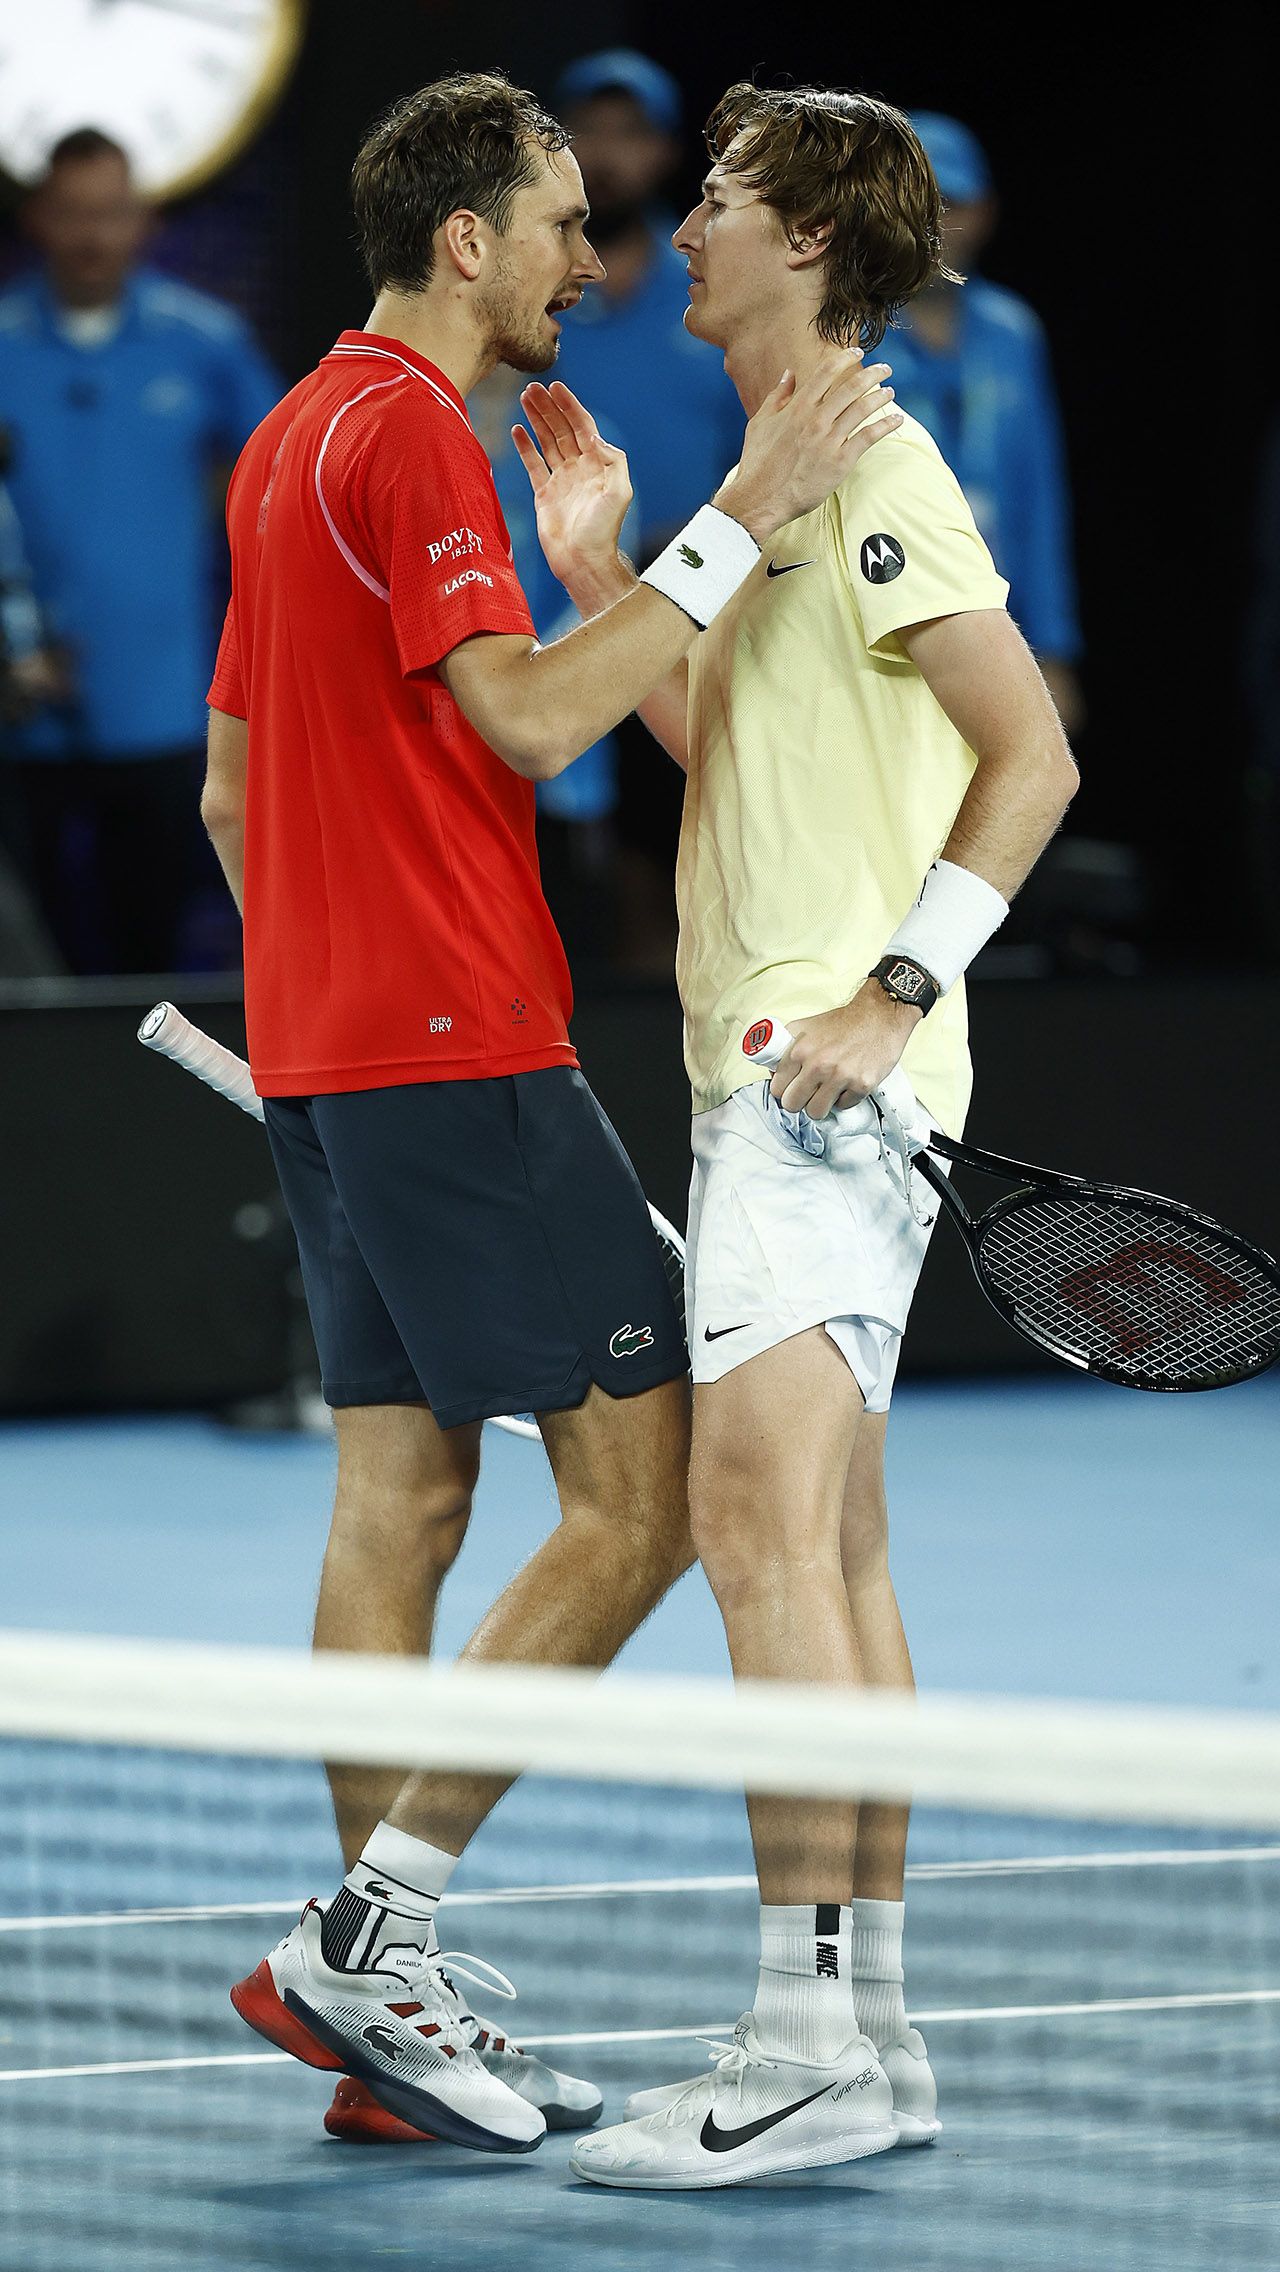 Даниил Медведев не смог пройти третий круг Australian Open. Себастьян Корда сенсационно одолел его в трёх сетах — 7:6, 6:3, 7:6.